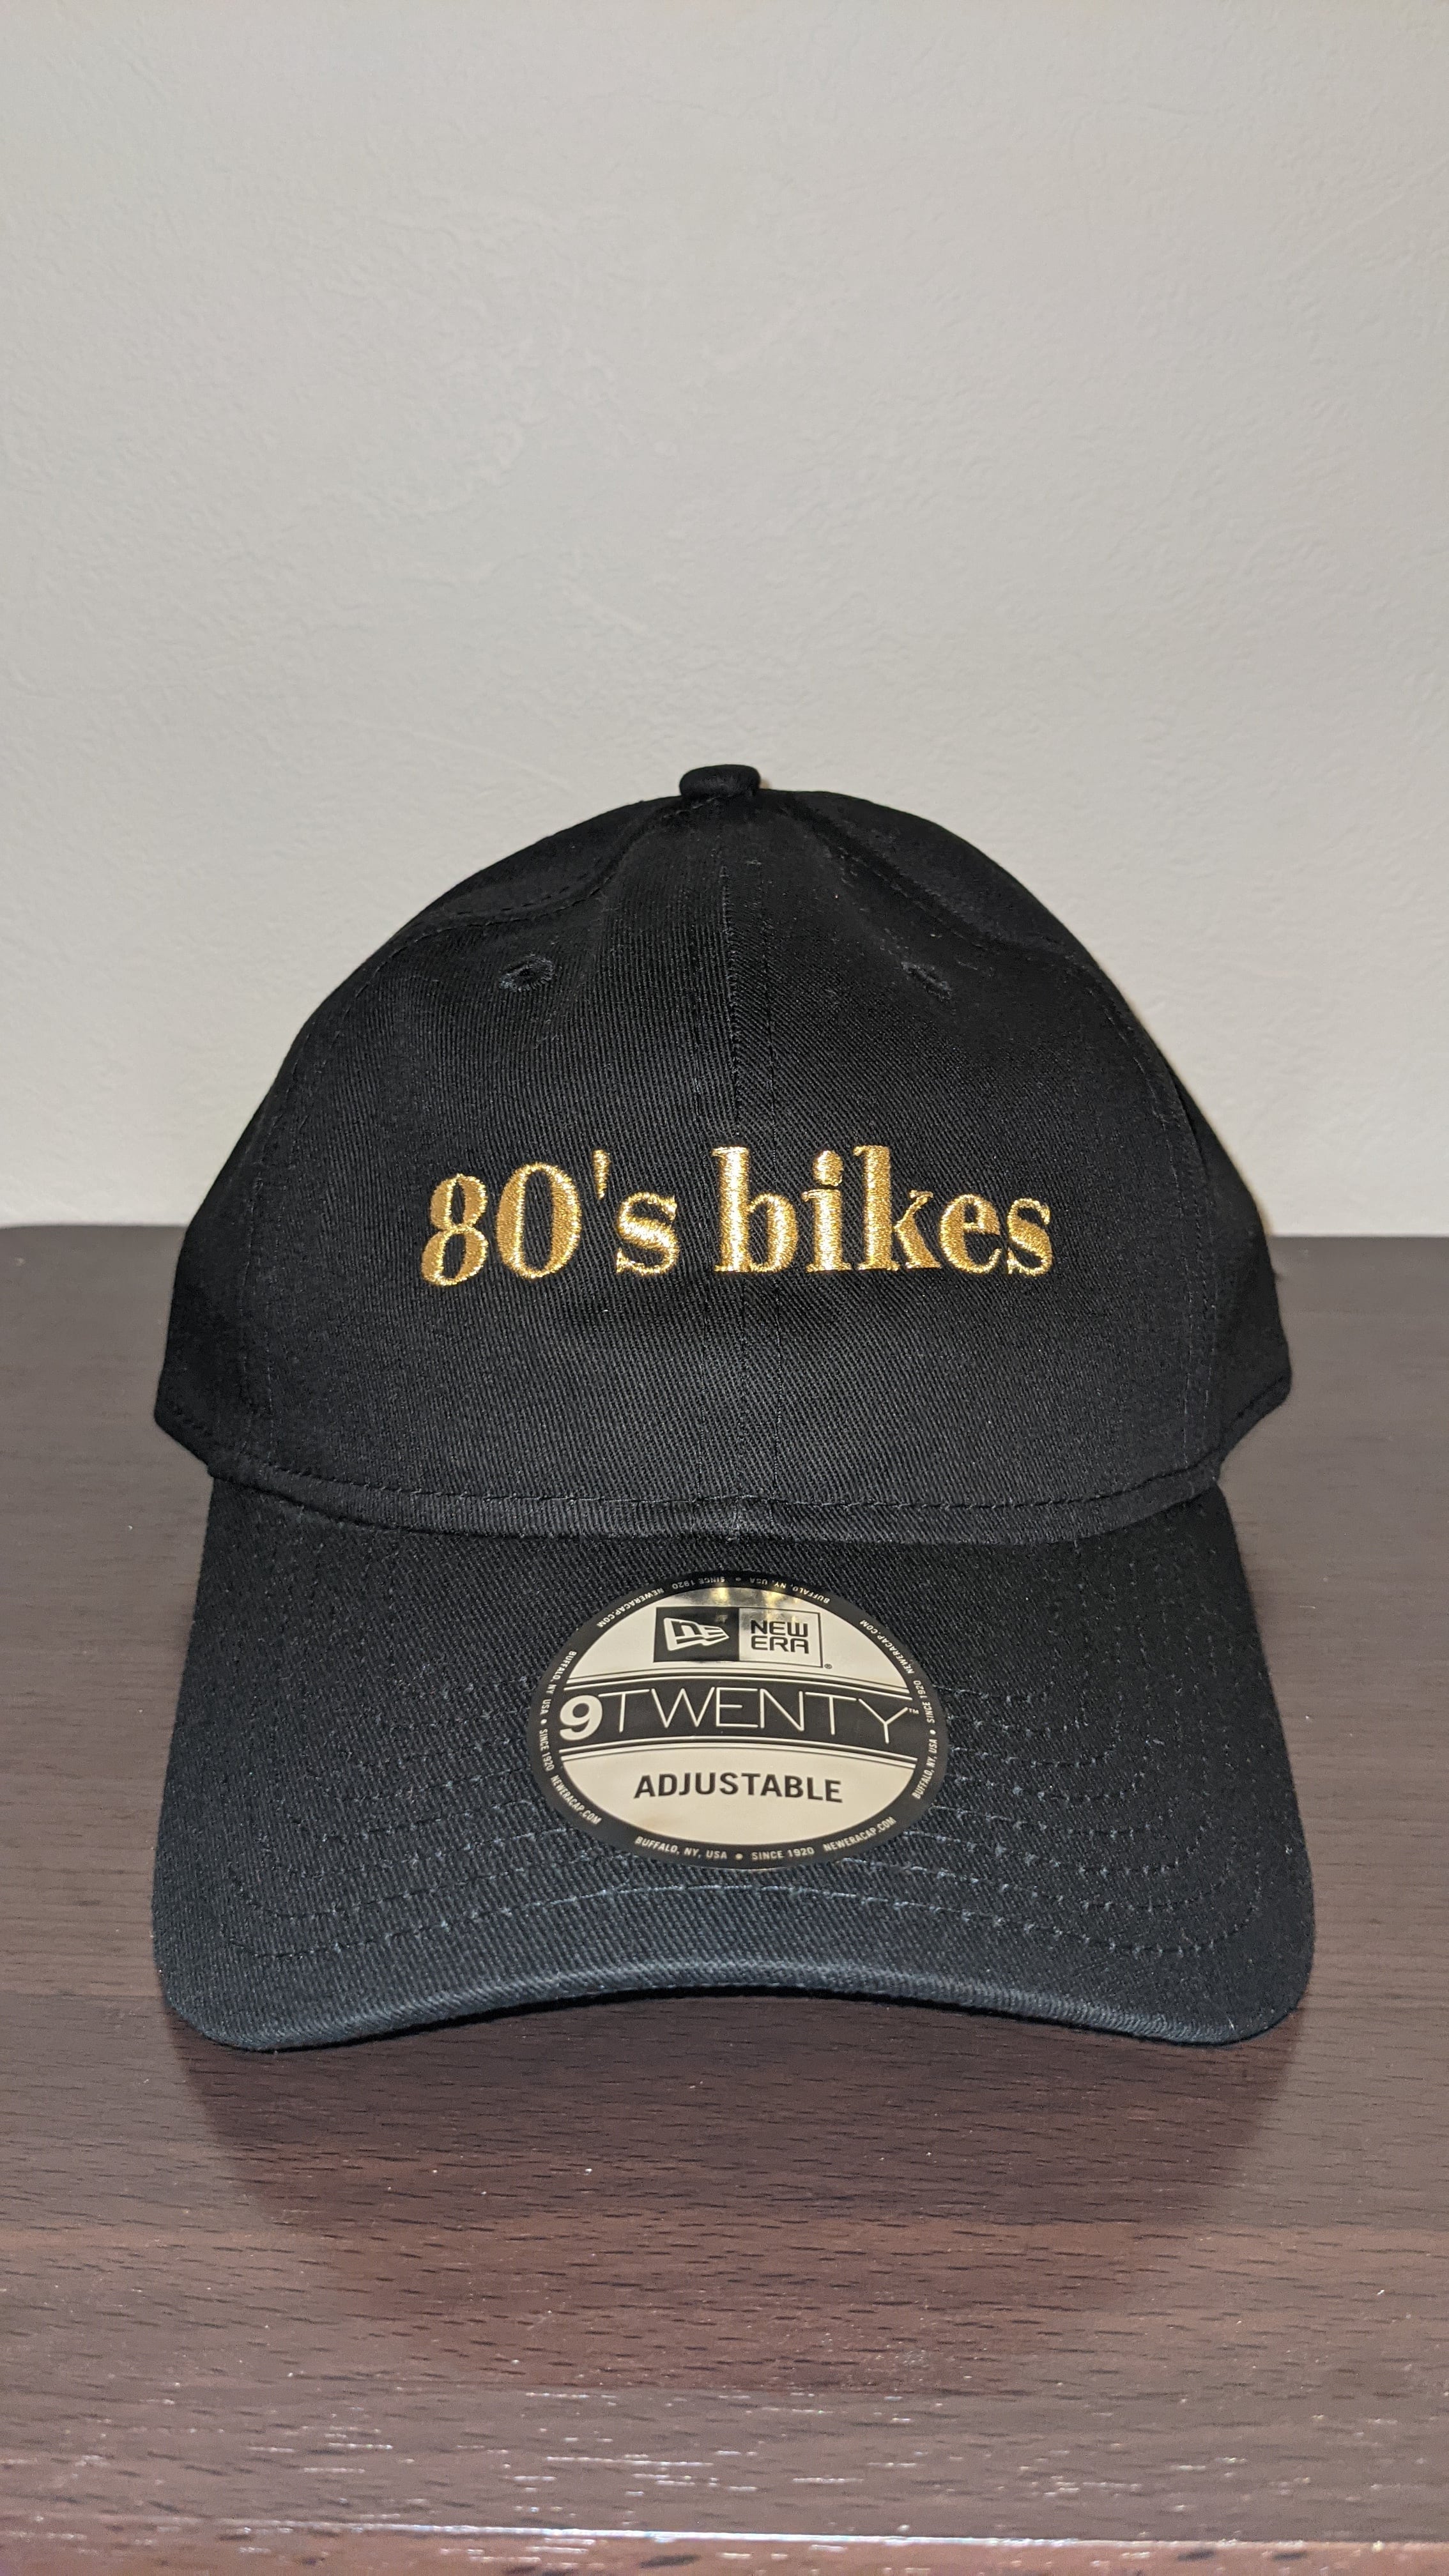 NEW ERA 80's bikes ベースボールキャップ | 80'sbikes